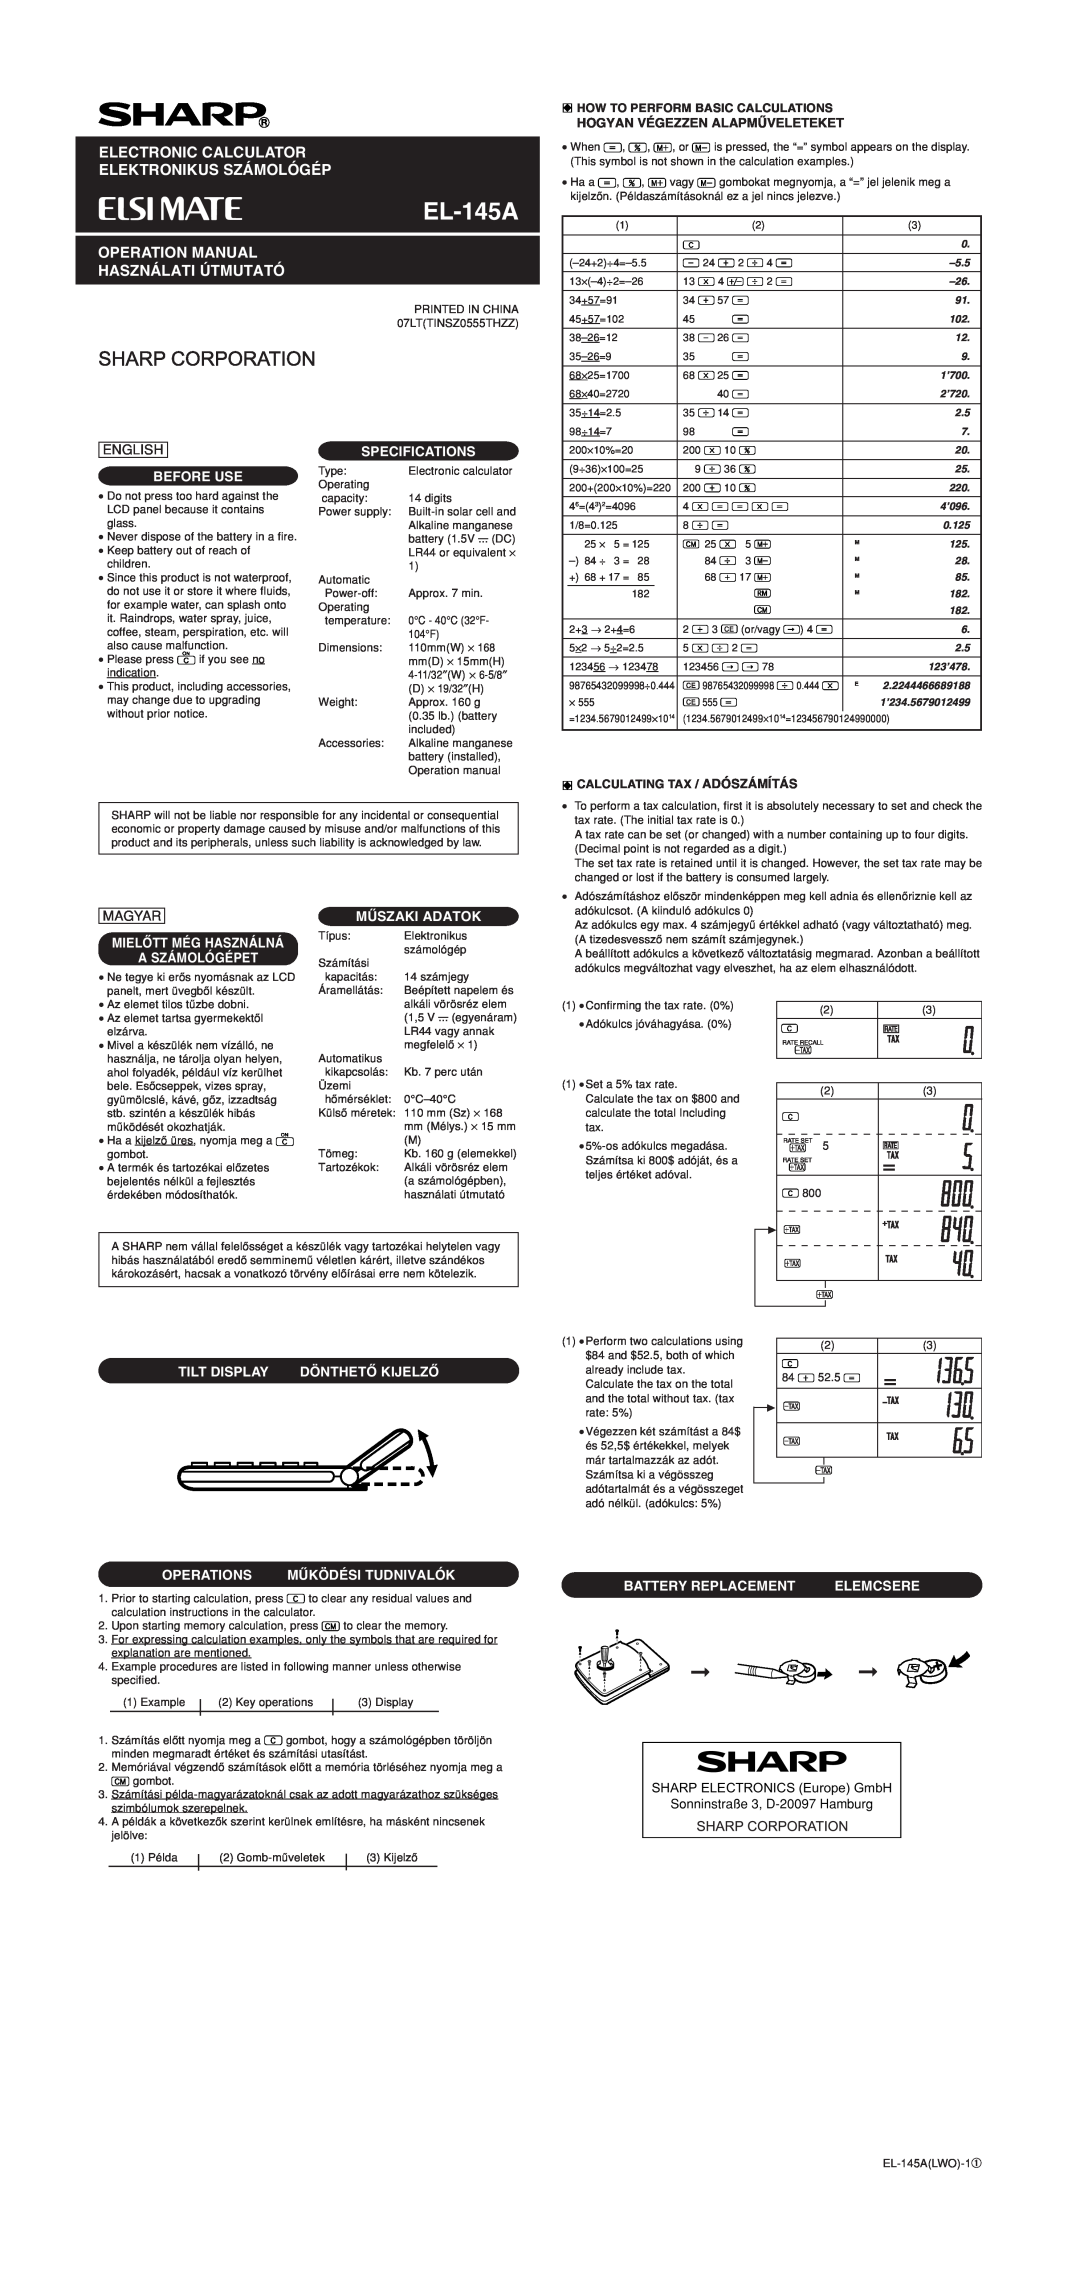 Sharp EL-145A specifications Electronic Calculator, Elektronikus Számológép, Használati Útmutató, English, Before Use 